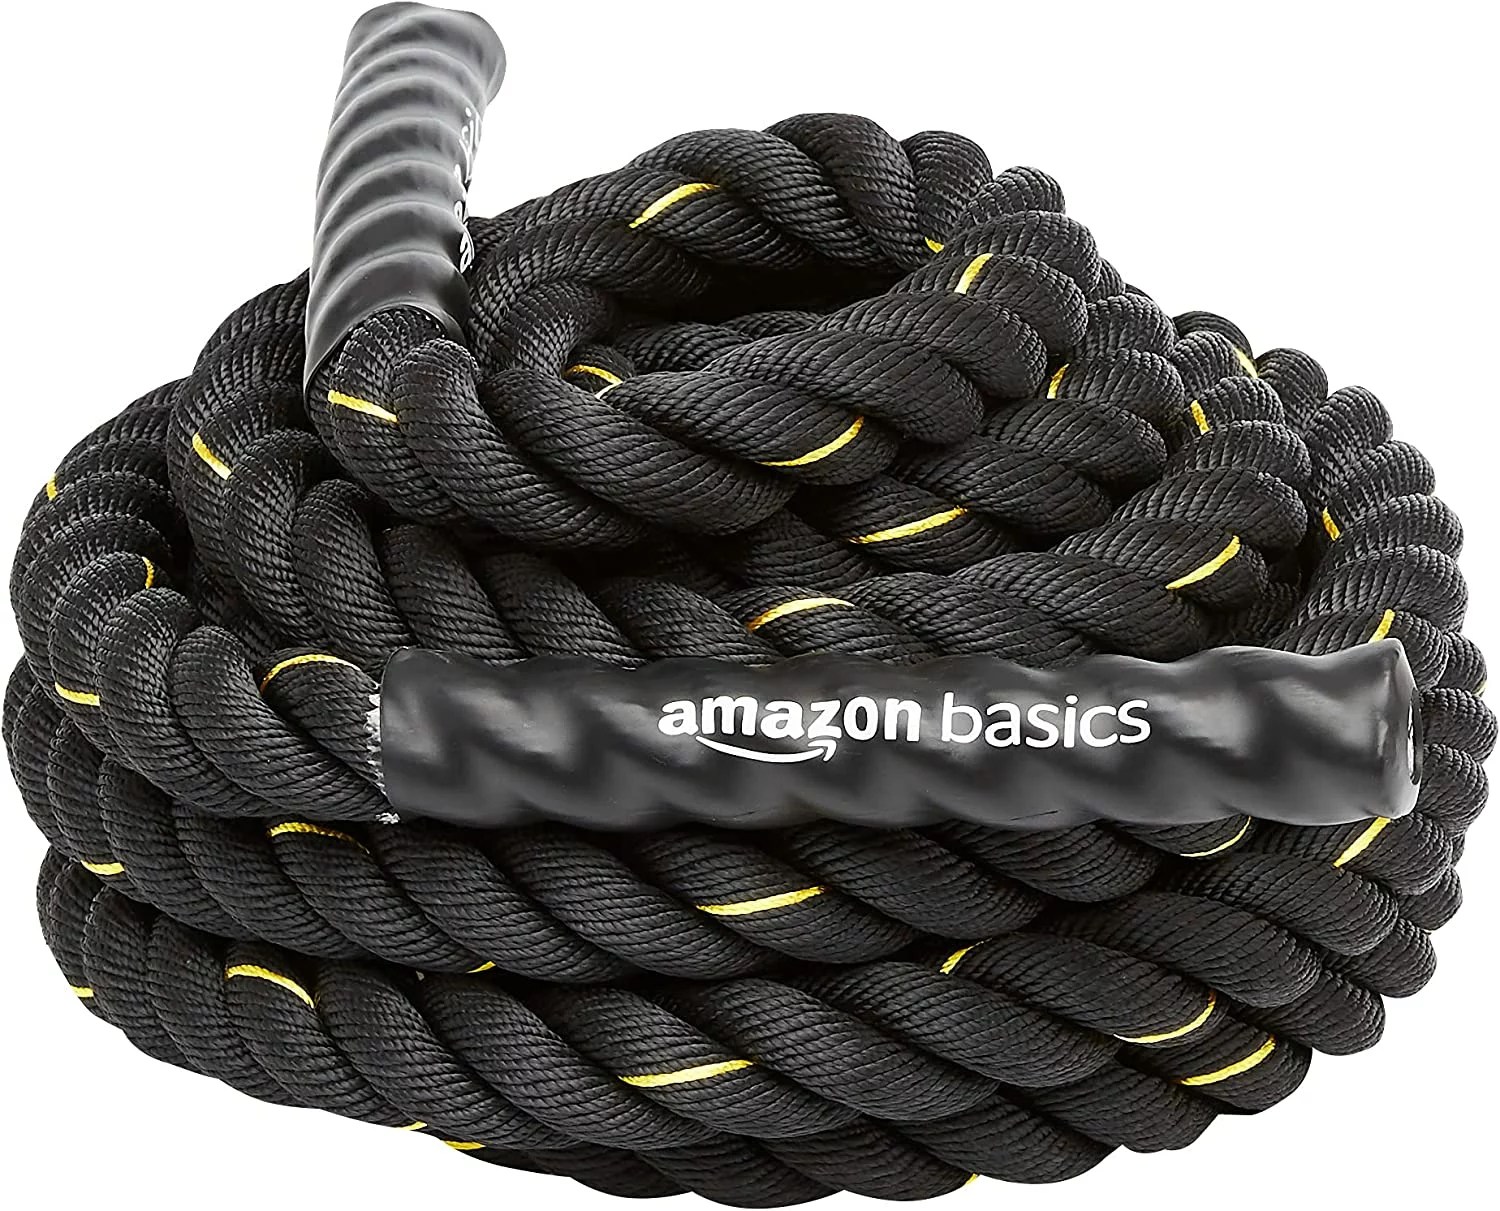 amazon basics battle rope on a white background